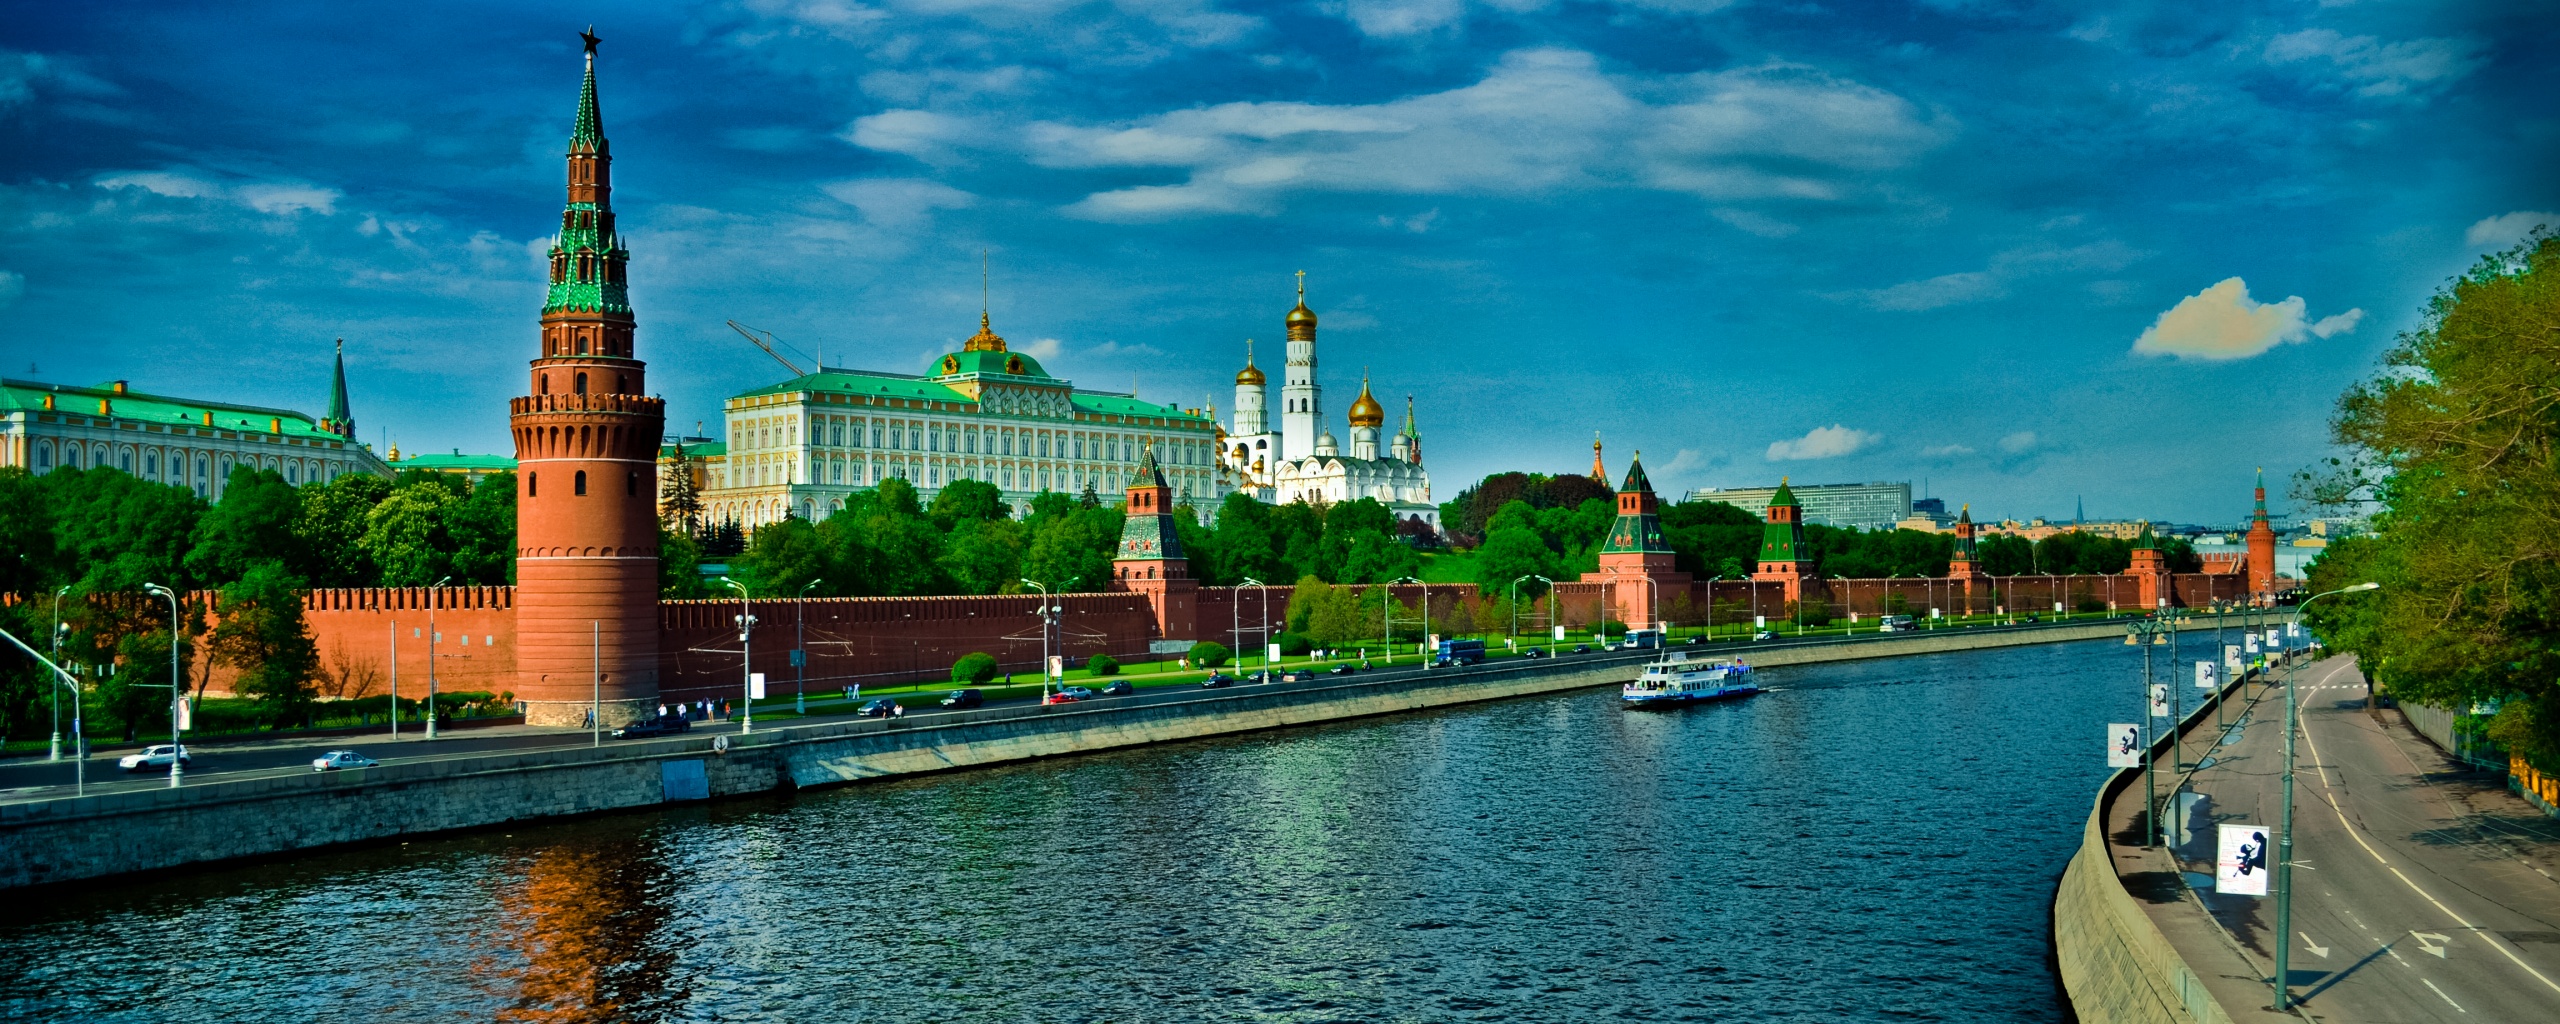 Московский кремль обои